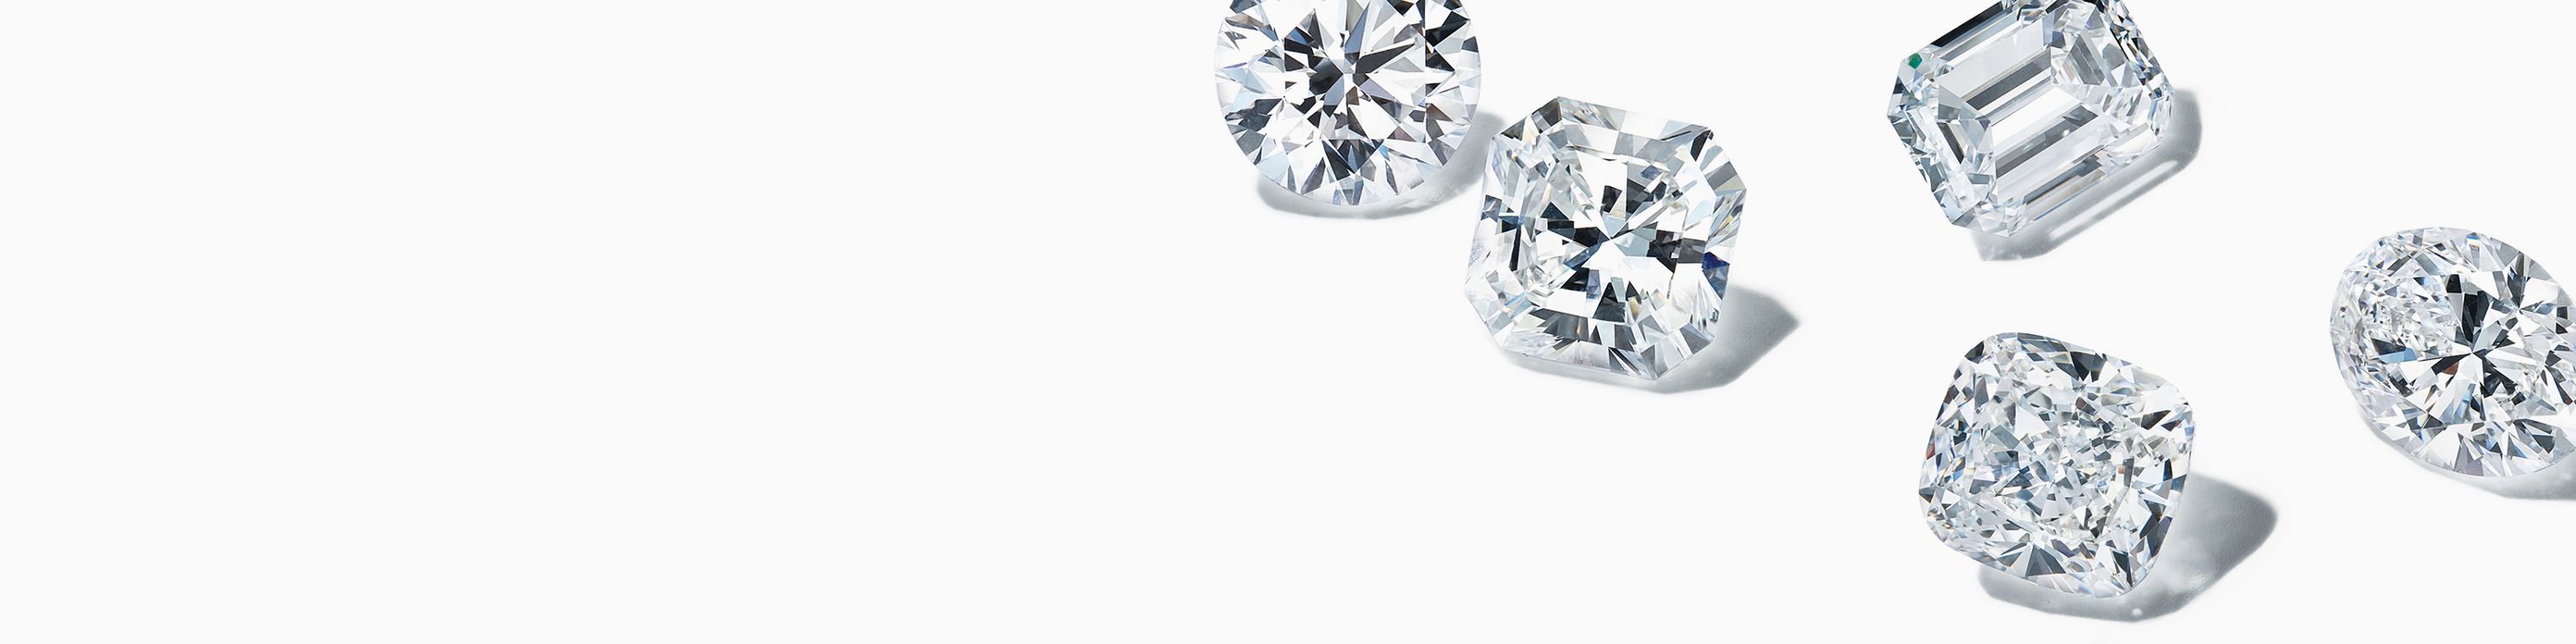 ダイヤモンド カラット ダイヤモンドのカラットとは Tiffany Co